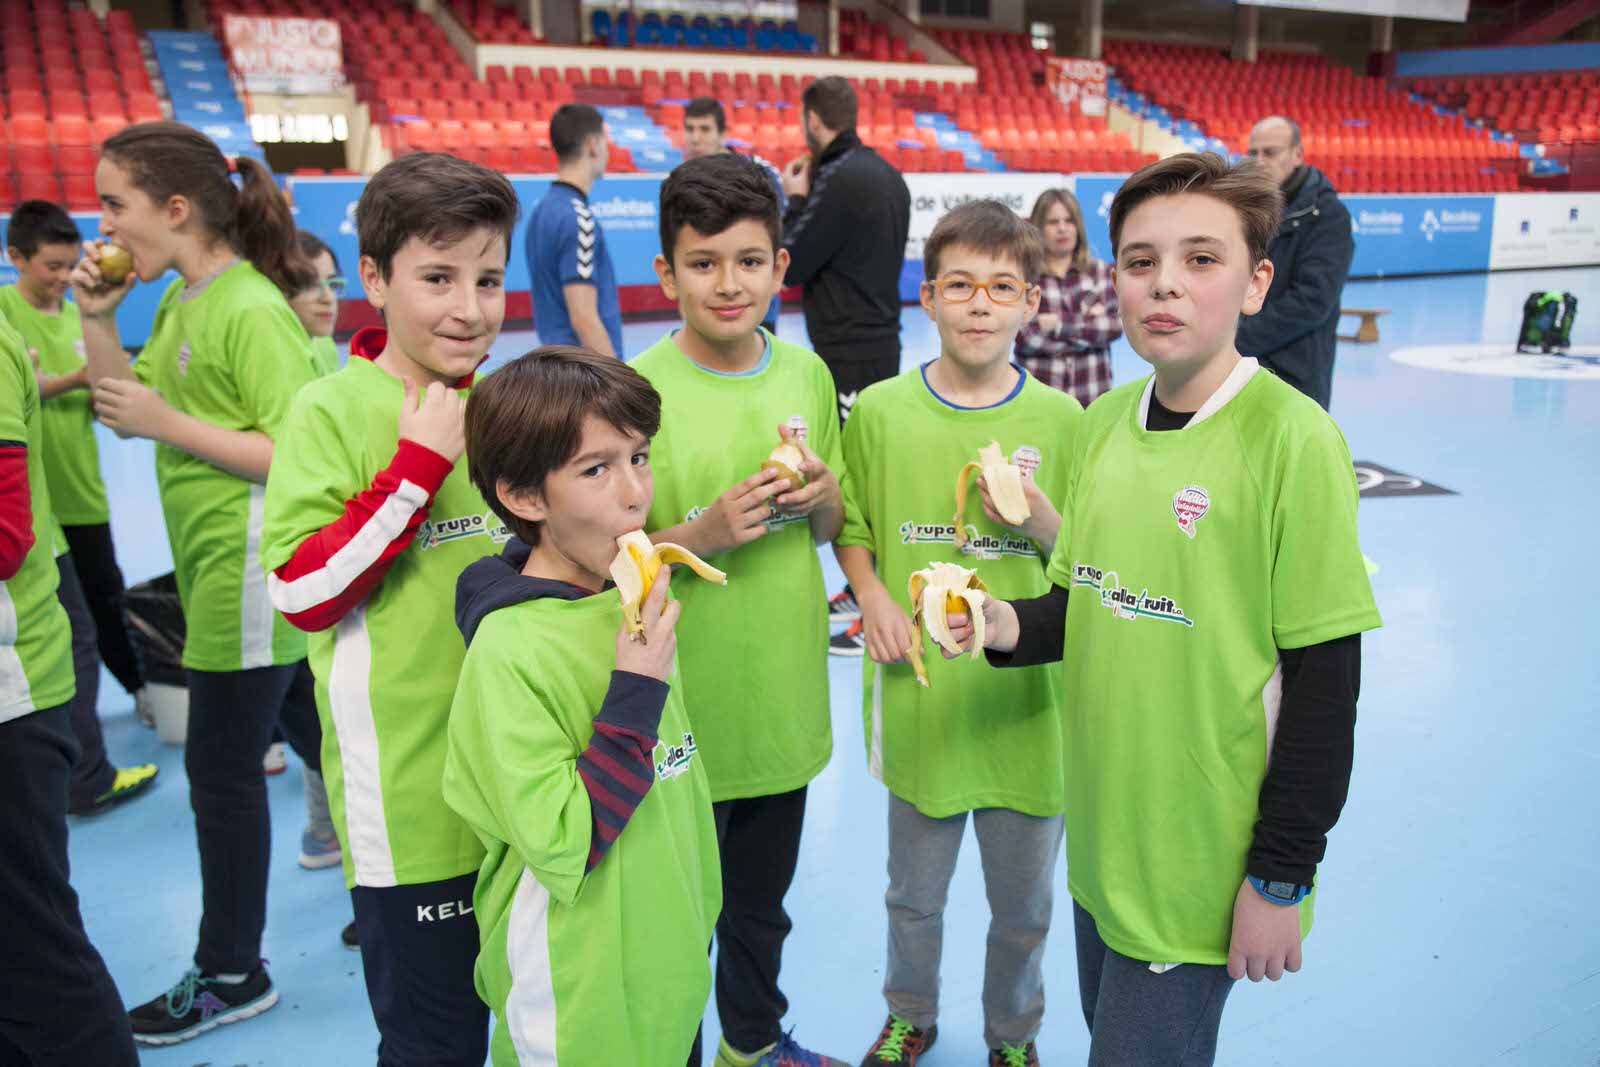 El club lanza la campaña ‘Hábitos y vida saludable con el Recoletas Atlético Valladolid’ para fomentar un estilo de vida más sano | Galería 21 / 24